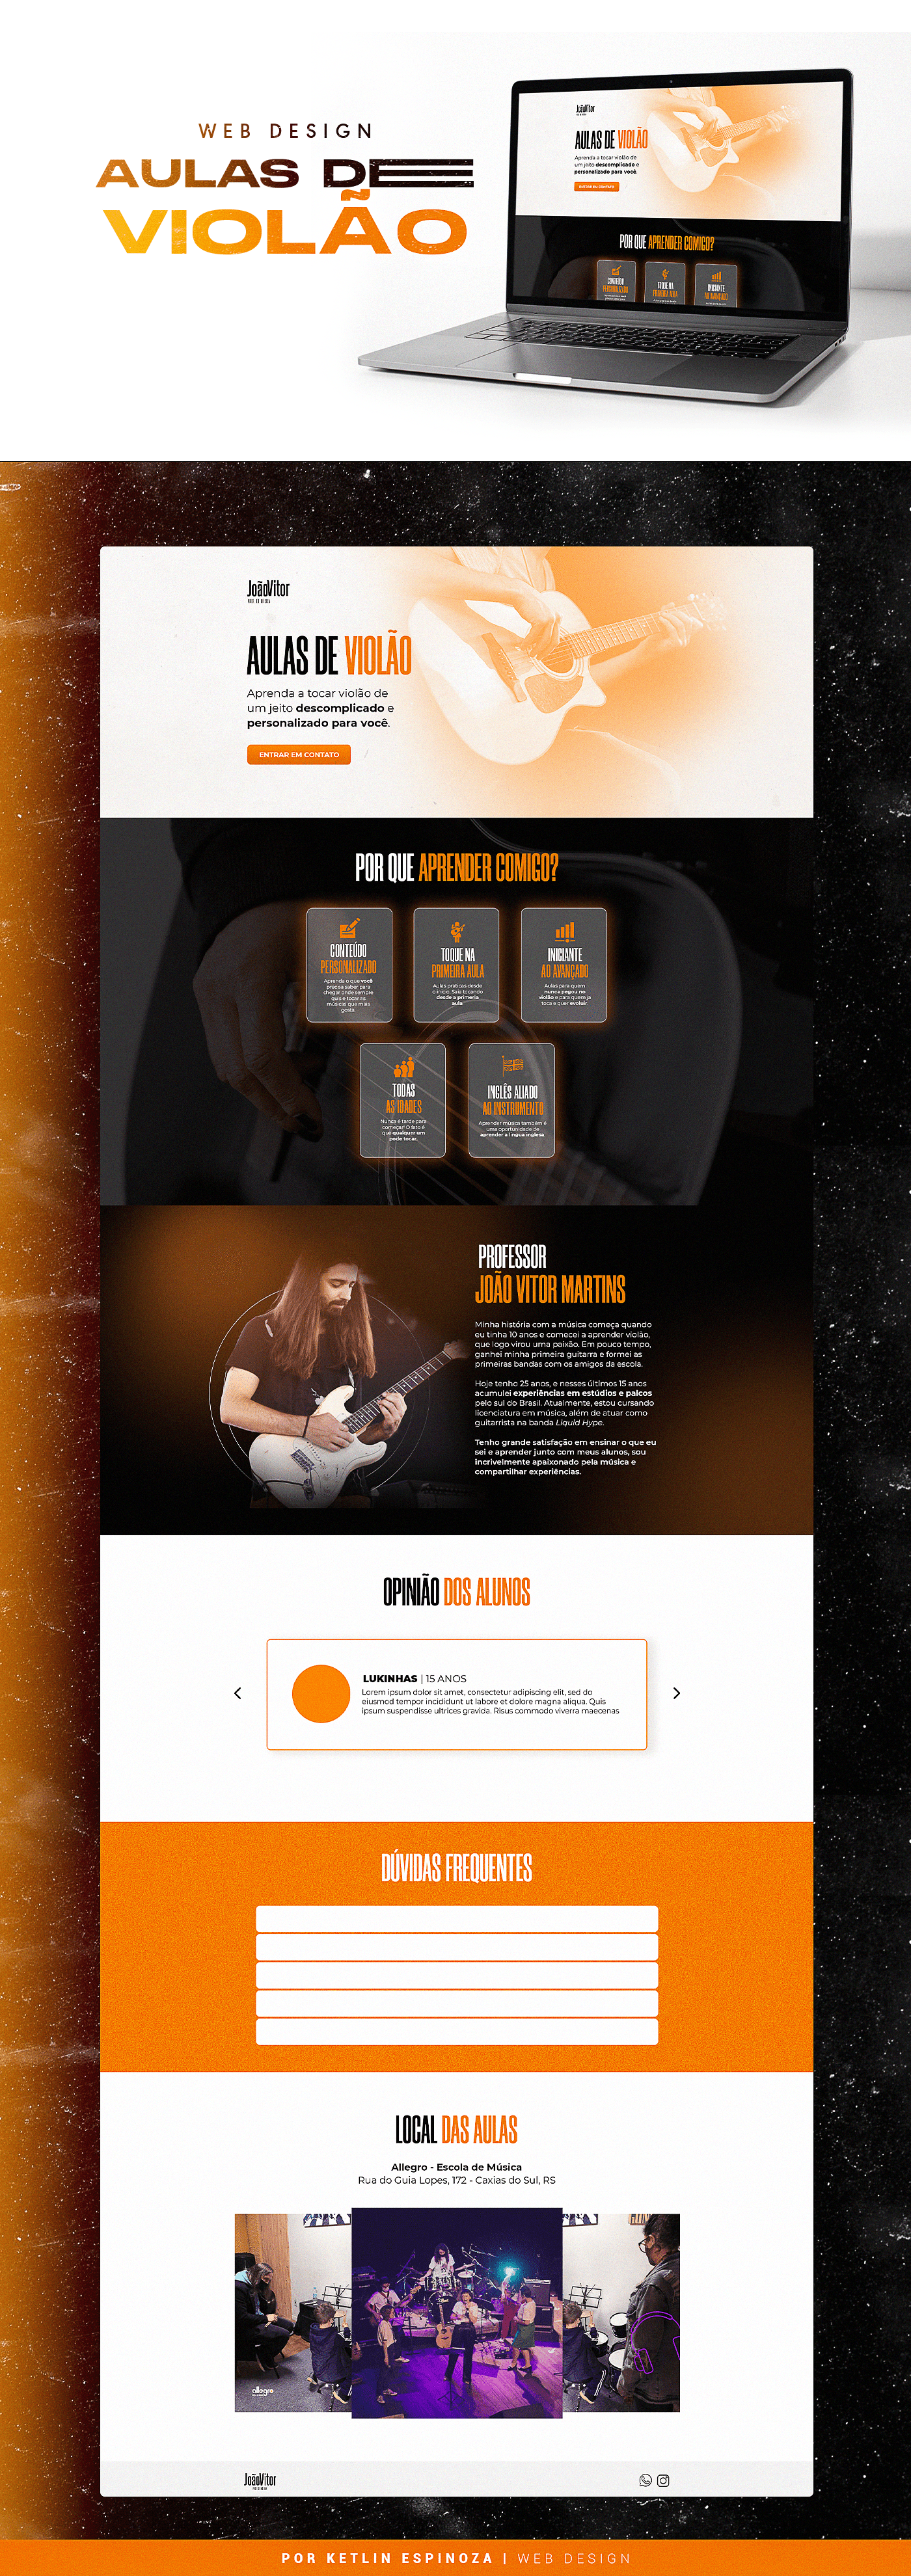 aulas de violão design marketing   paginas photoshop site Web Design 